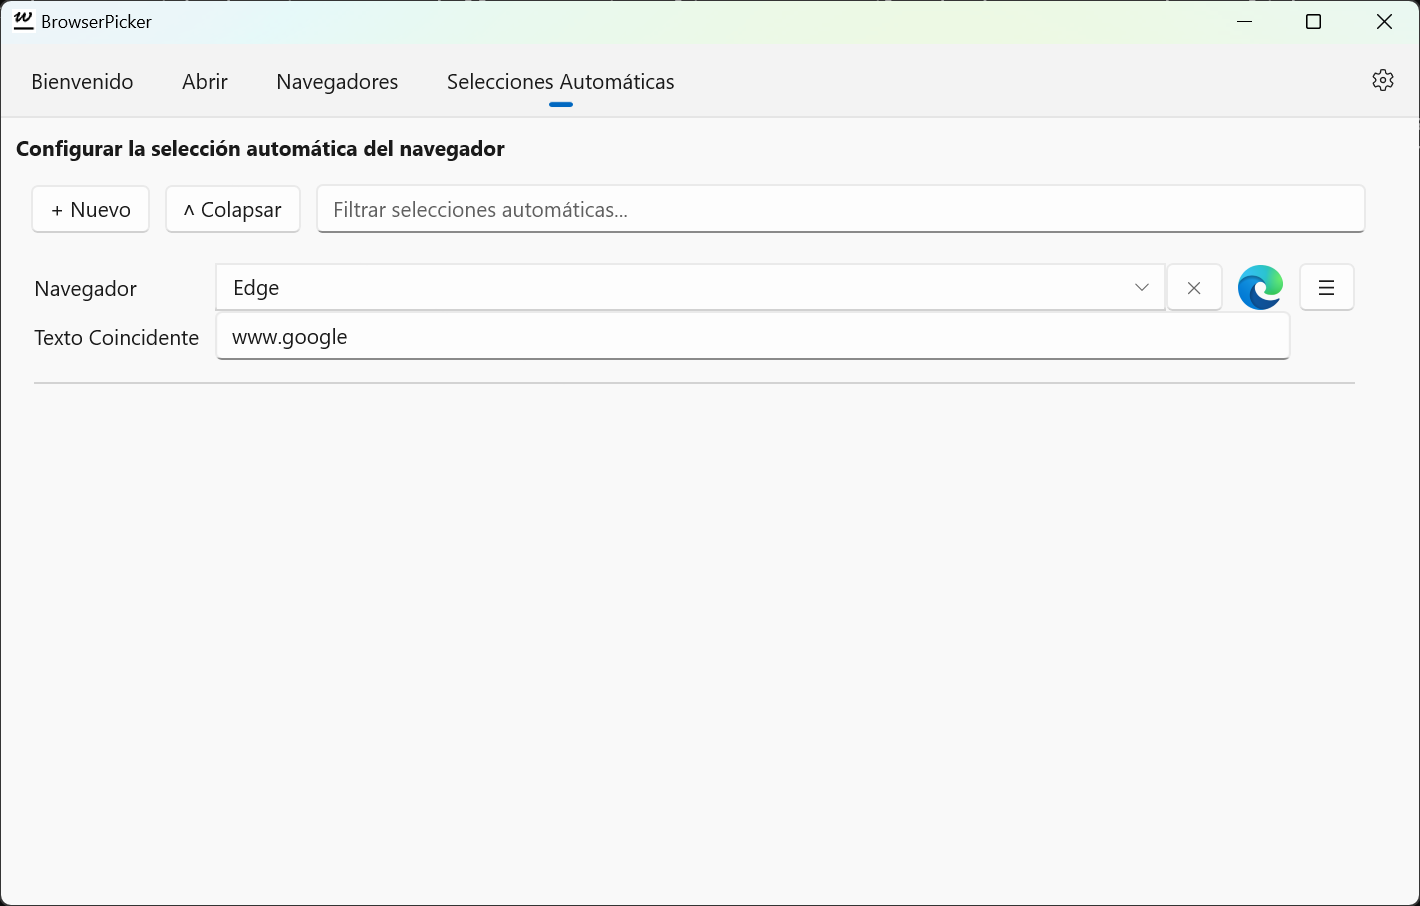 BrowserPicker: página de Selección Automática, donde puede configurar qué navegadores se seleccionan automáticamente en función de la URL.